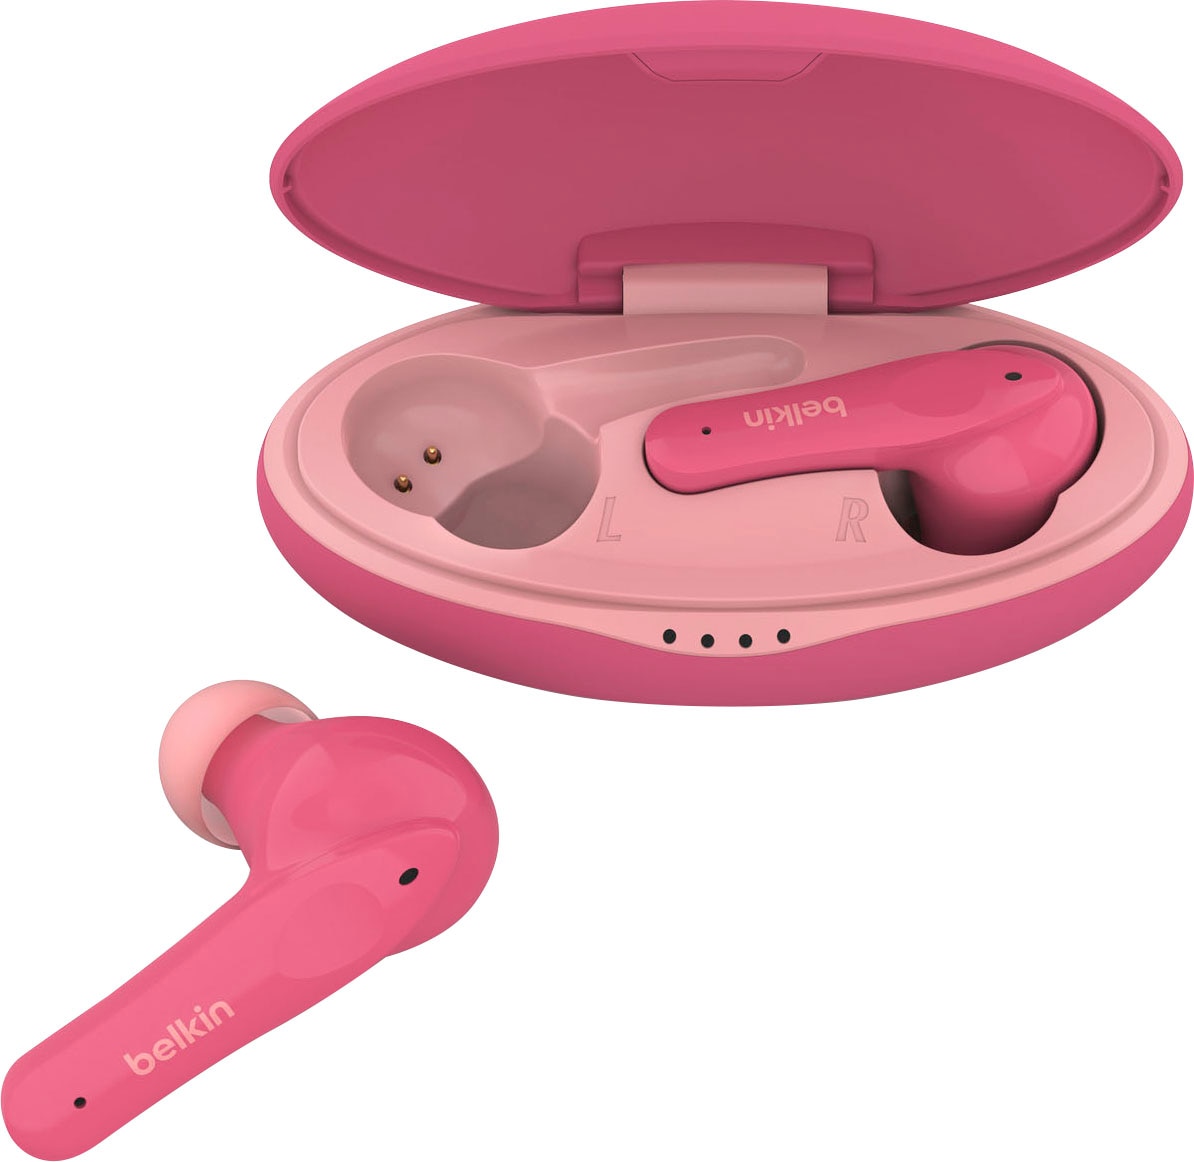 Belkin wireless Kopfhörer »SOUNDFORM NANO - Kinder In-Ear-Kopfhörer«, auf 85 dB begrenzt; am Kopfhörer